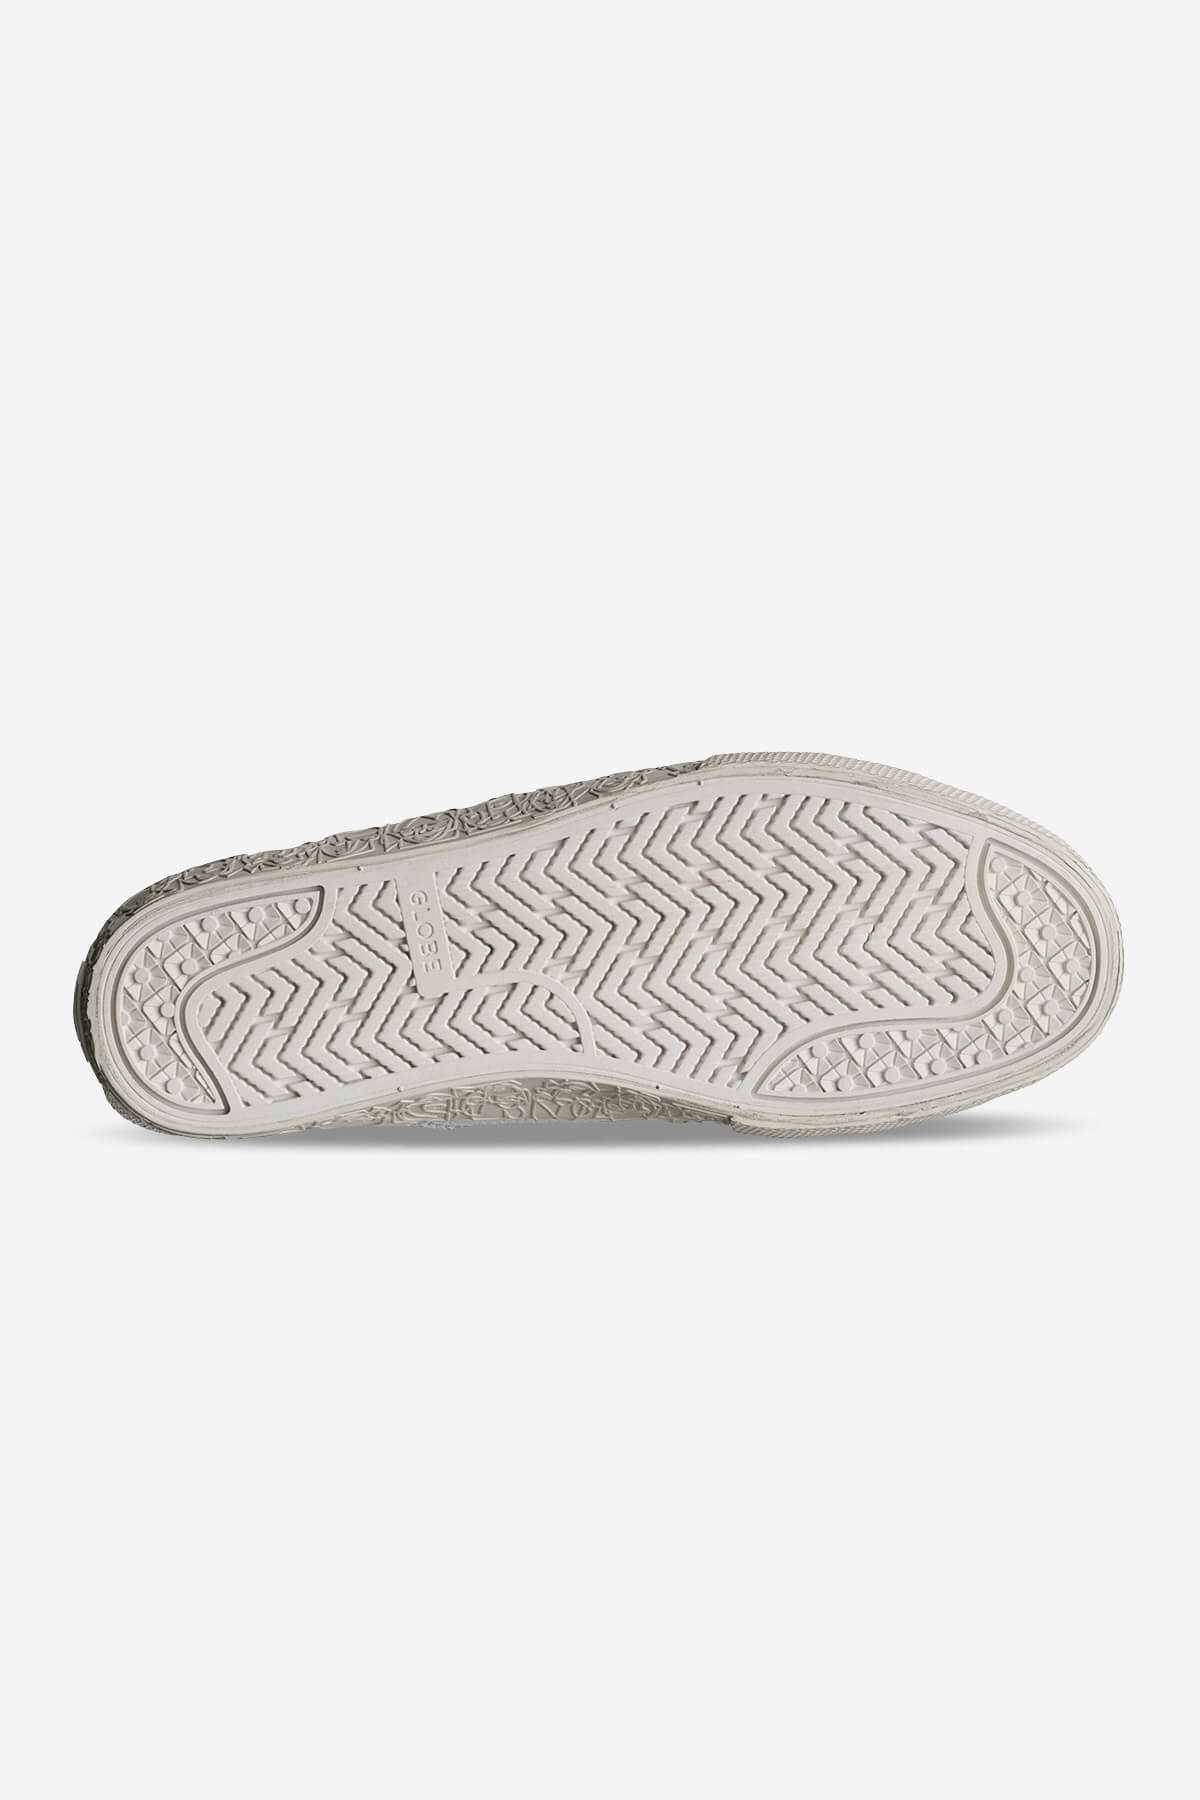 Globe - Surplus - White/Montano - skateboard Sapatos